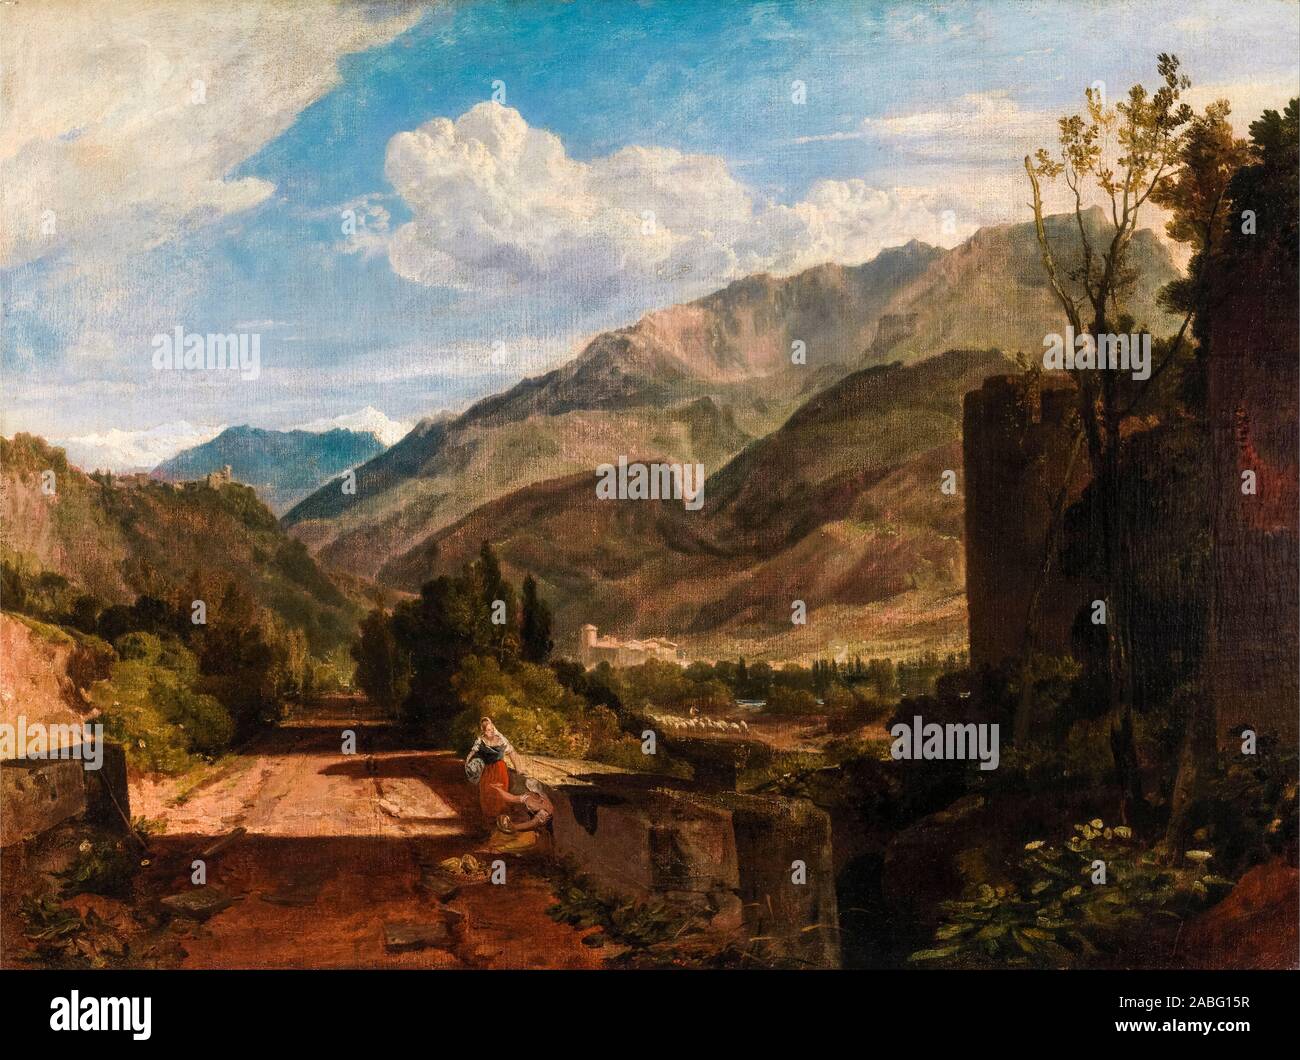 JMW Turner, Chateau de St. Michael, Bonneville, Savoy, landscape painting, 1802-1803 Stock Photo